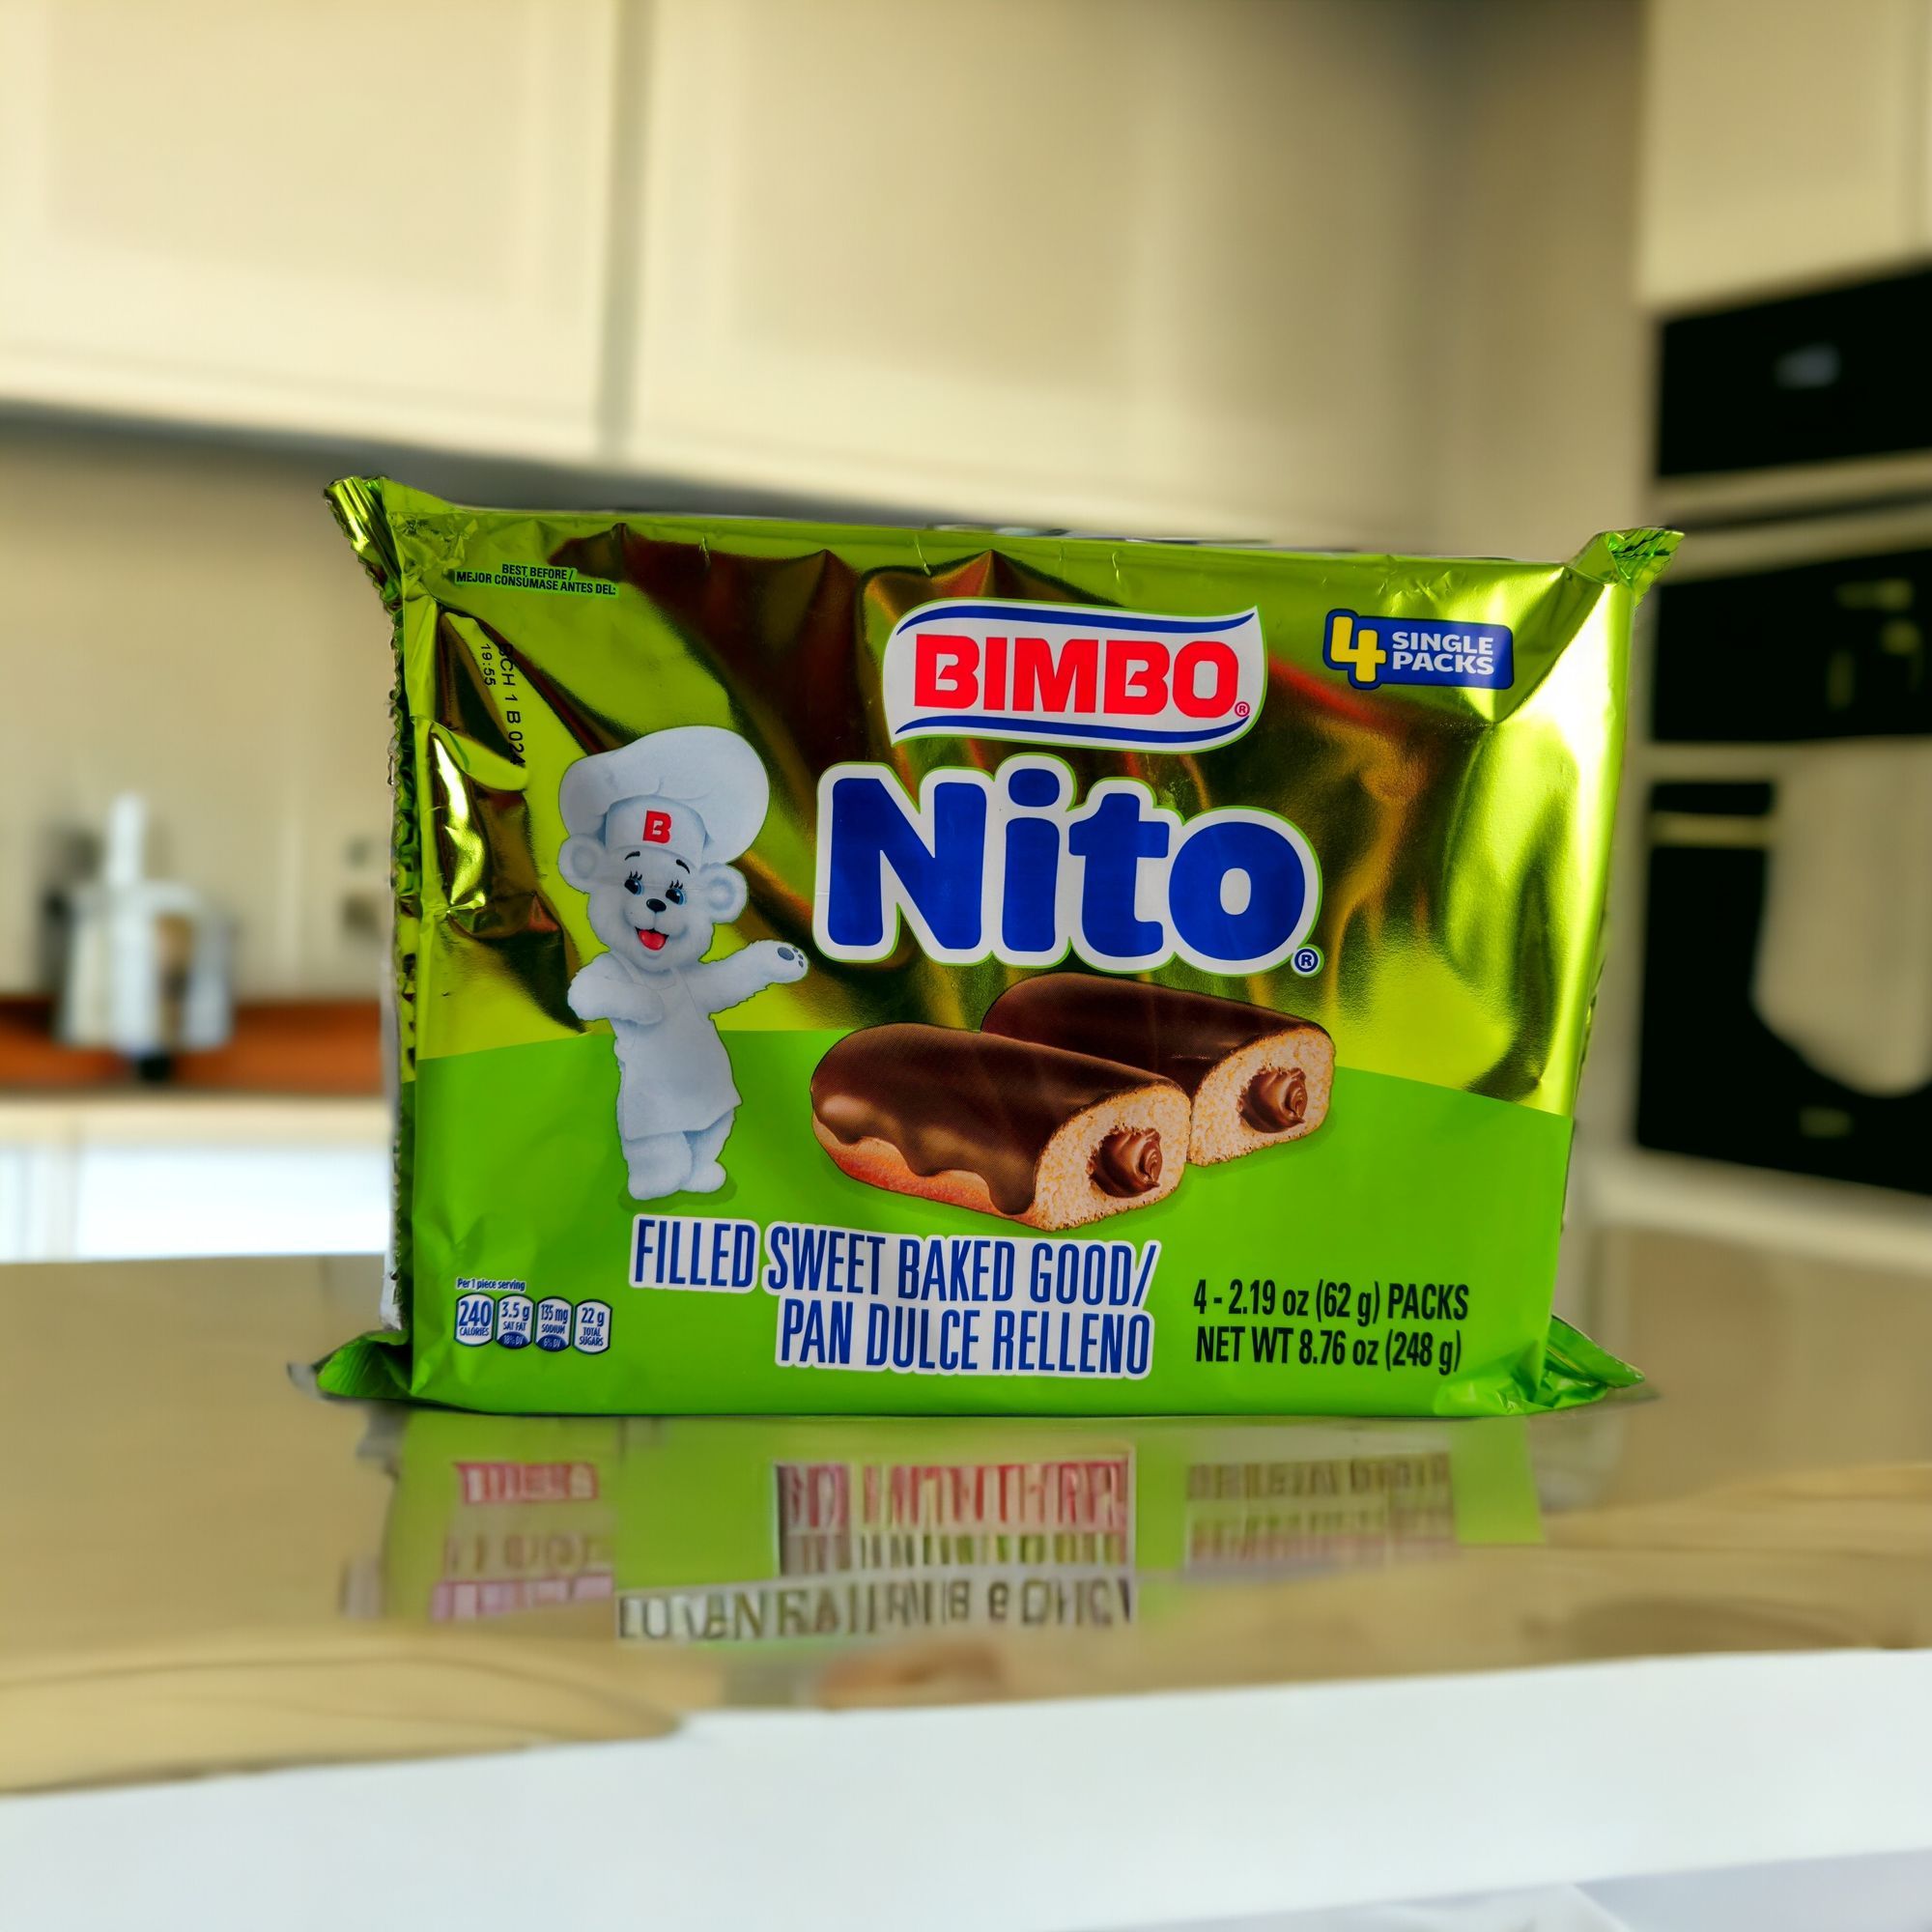 Nito – Bimbo – 4 packs (248 g)